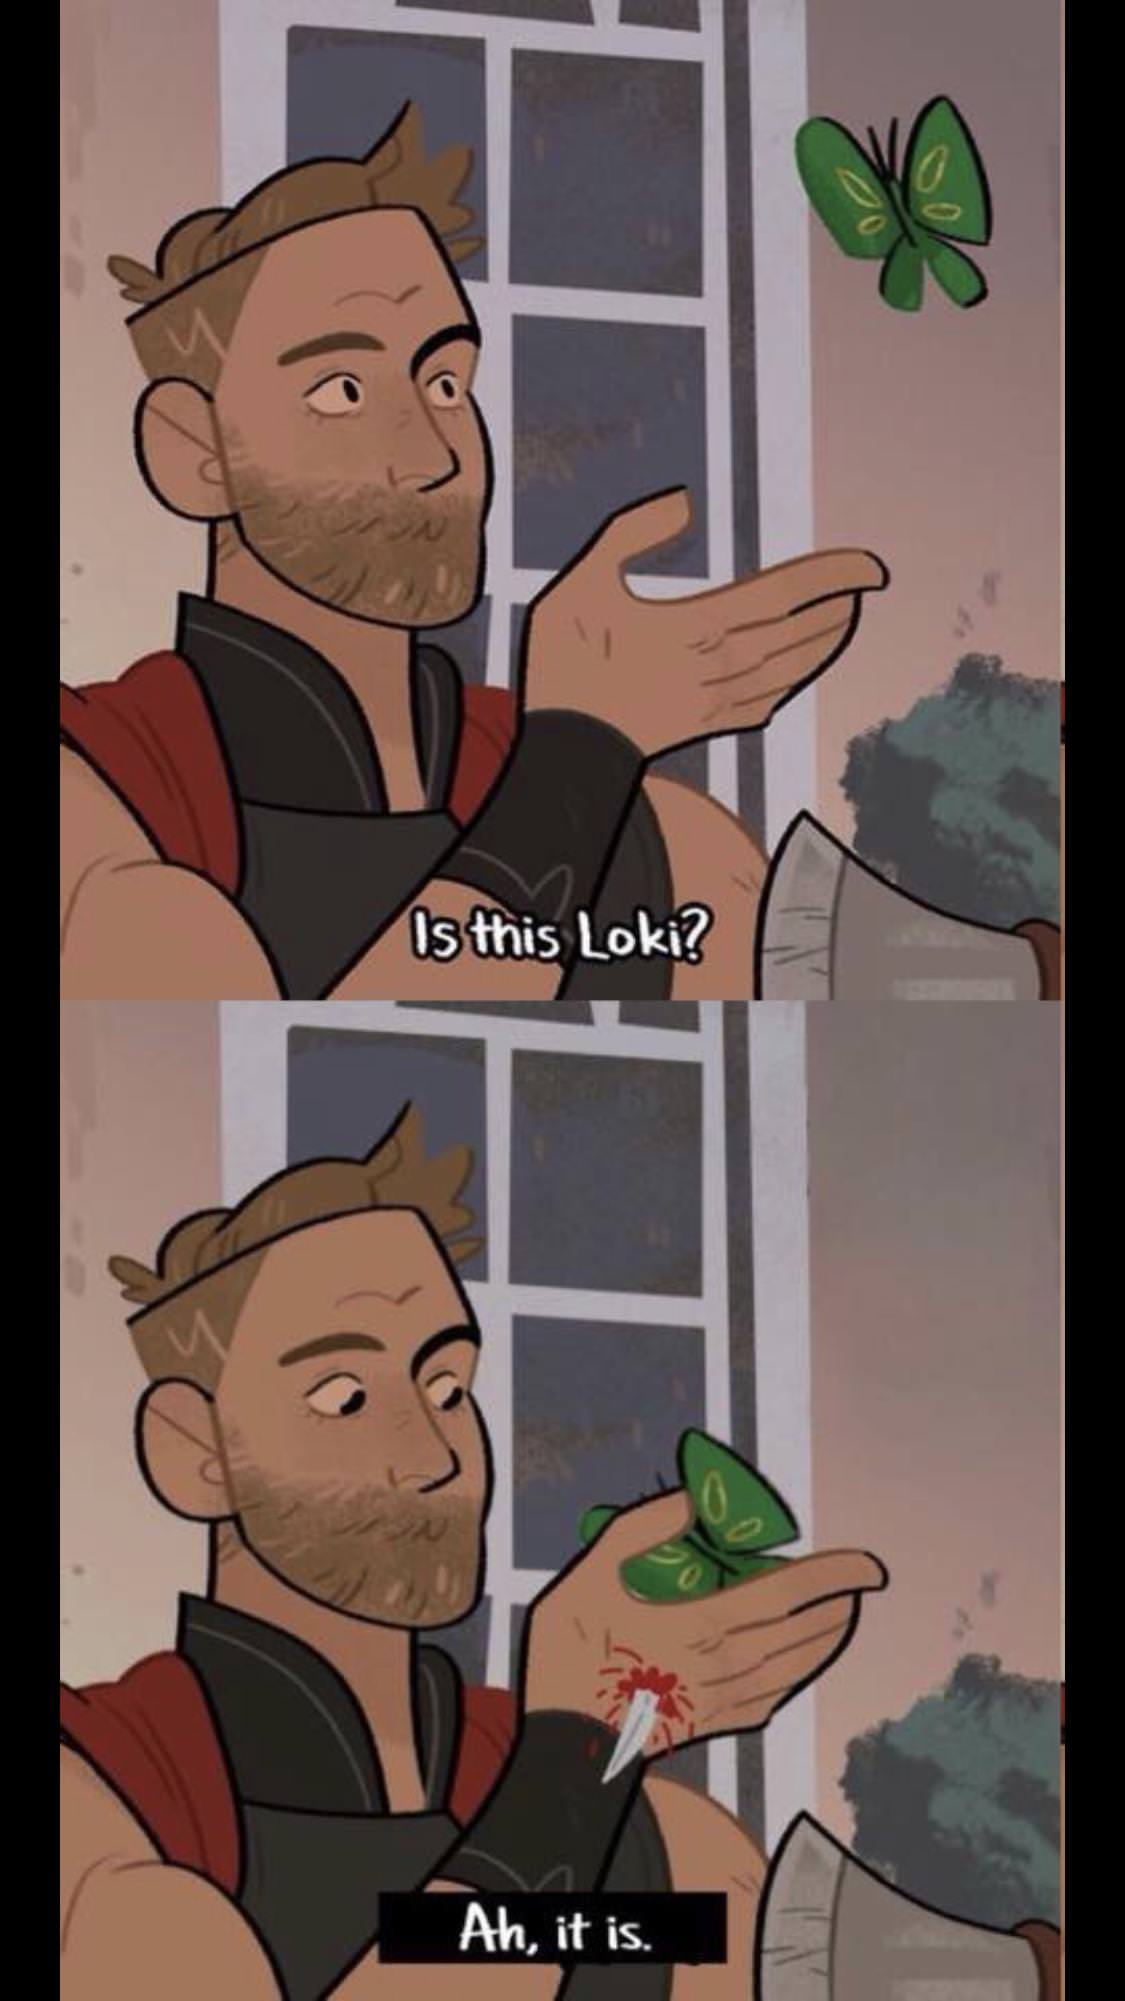 pigeon meme - Is this Loki? Ah, it is.